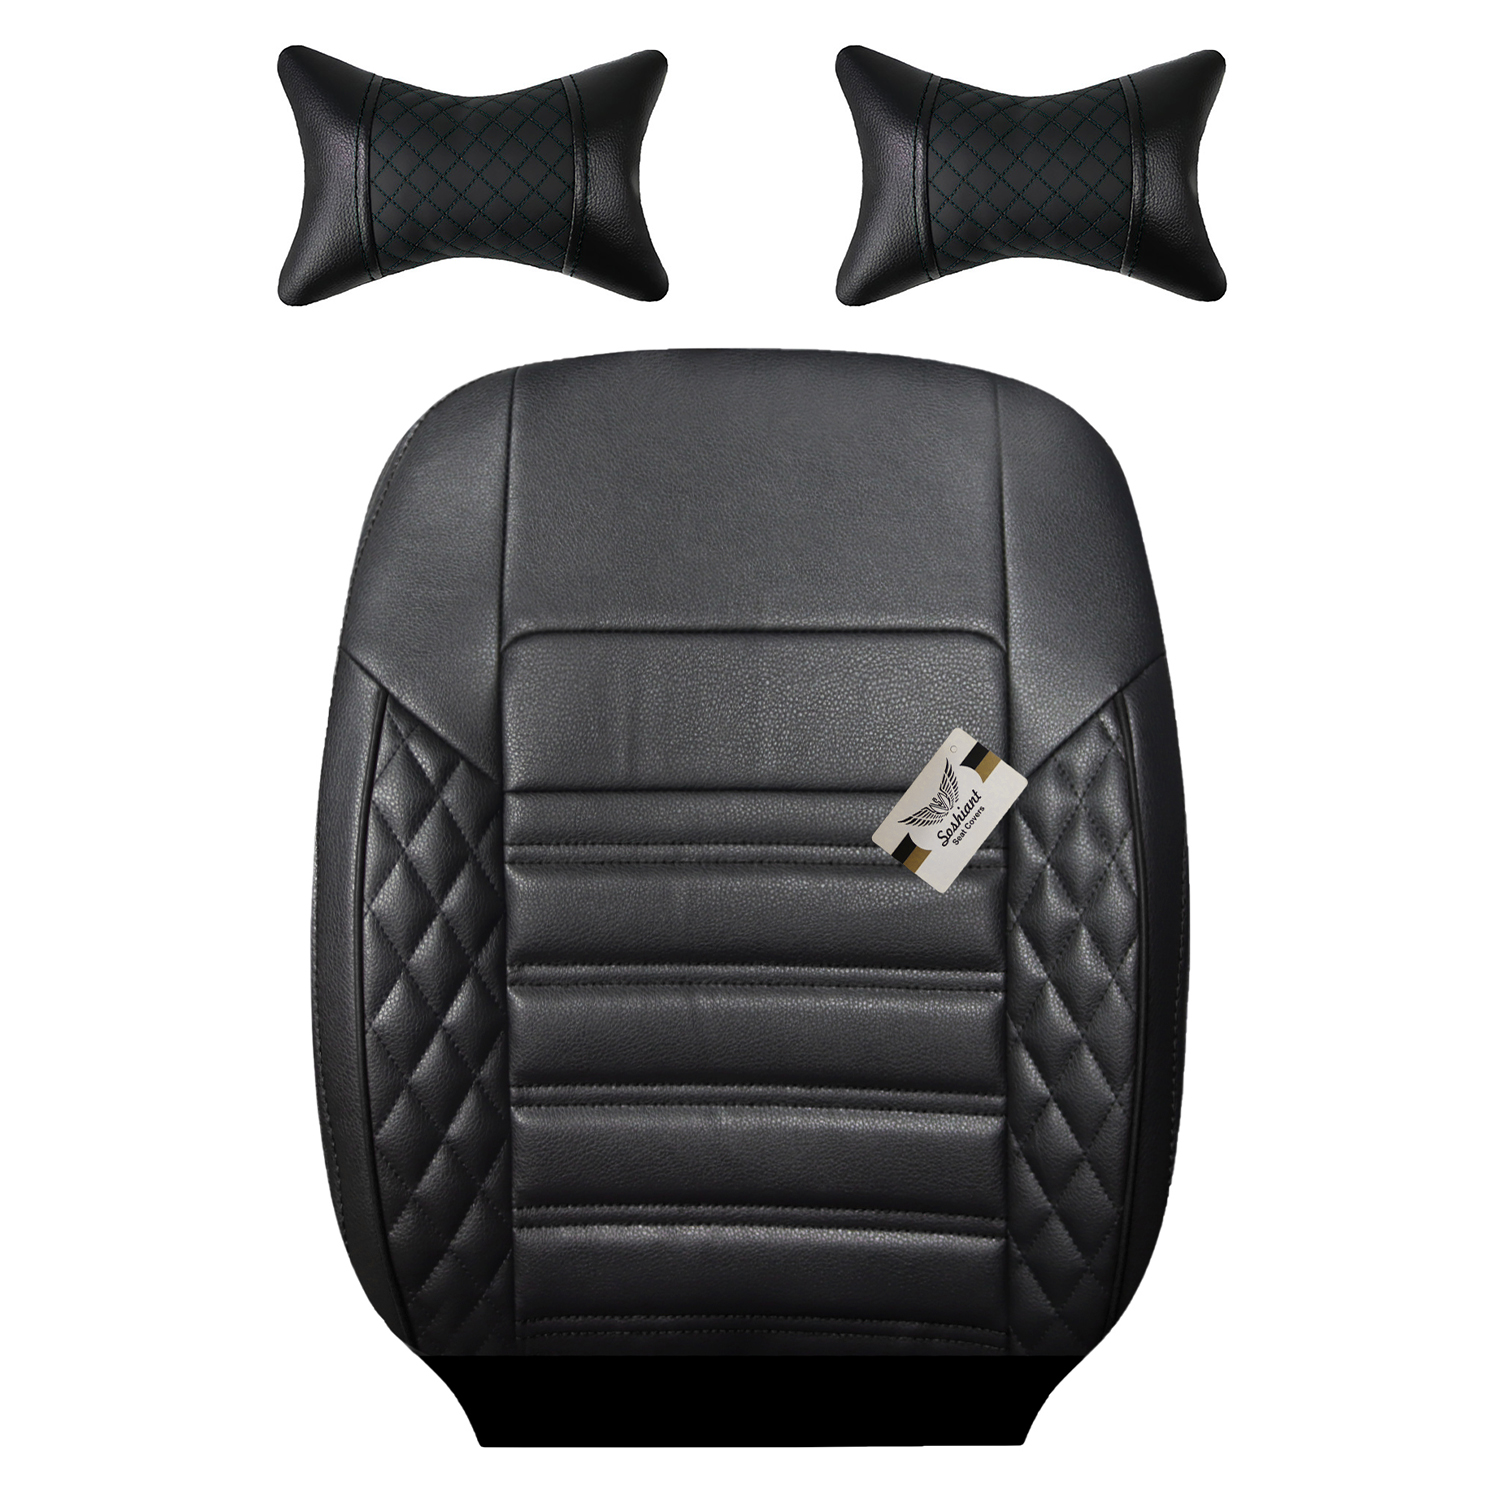 نکته خرید - قیمت روز روکش صندلی خودرو سوشیانت مدل سورنا مناسب برای پژو پرشیا به همراه پشت گردنی خرید